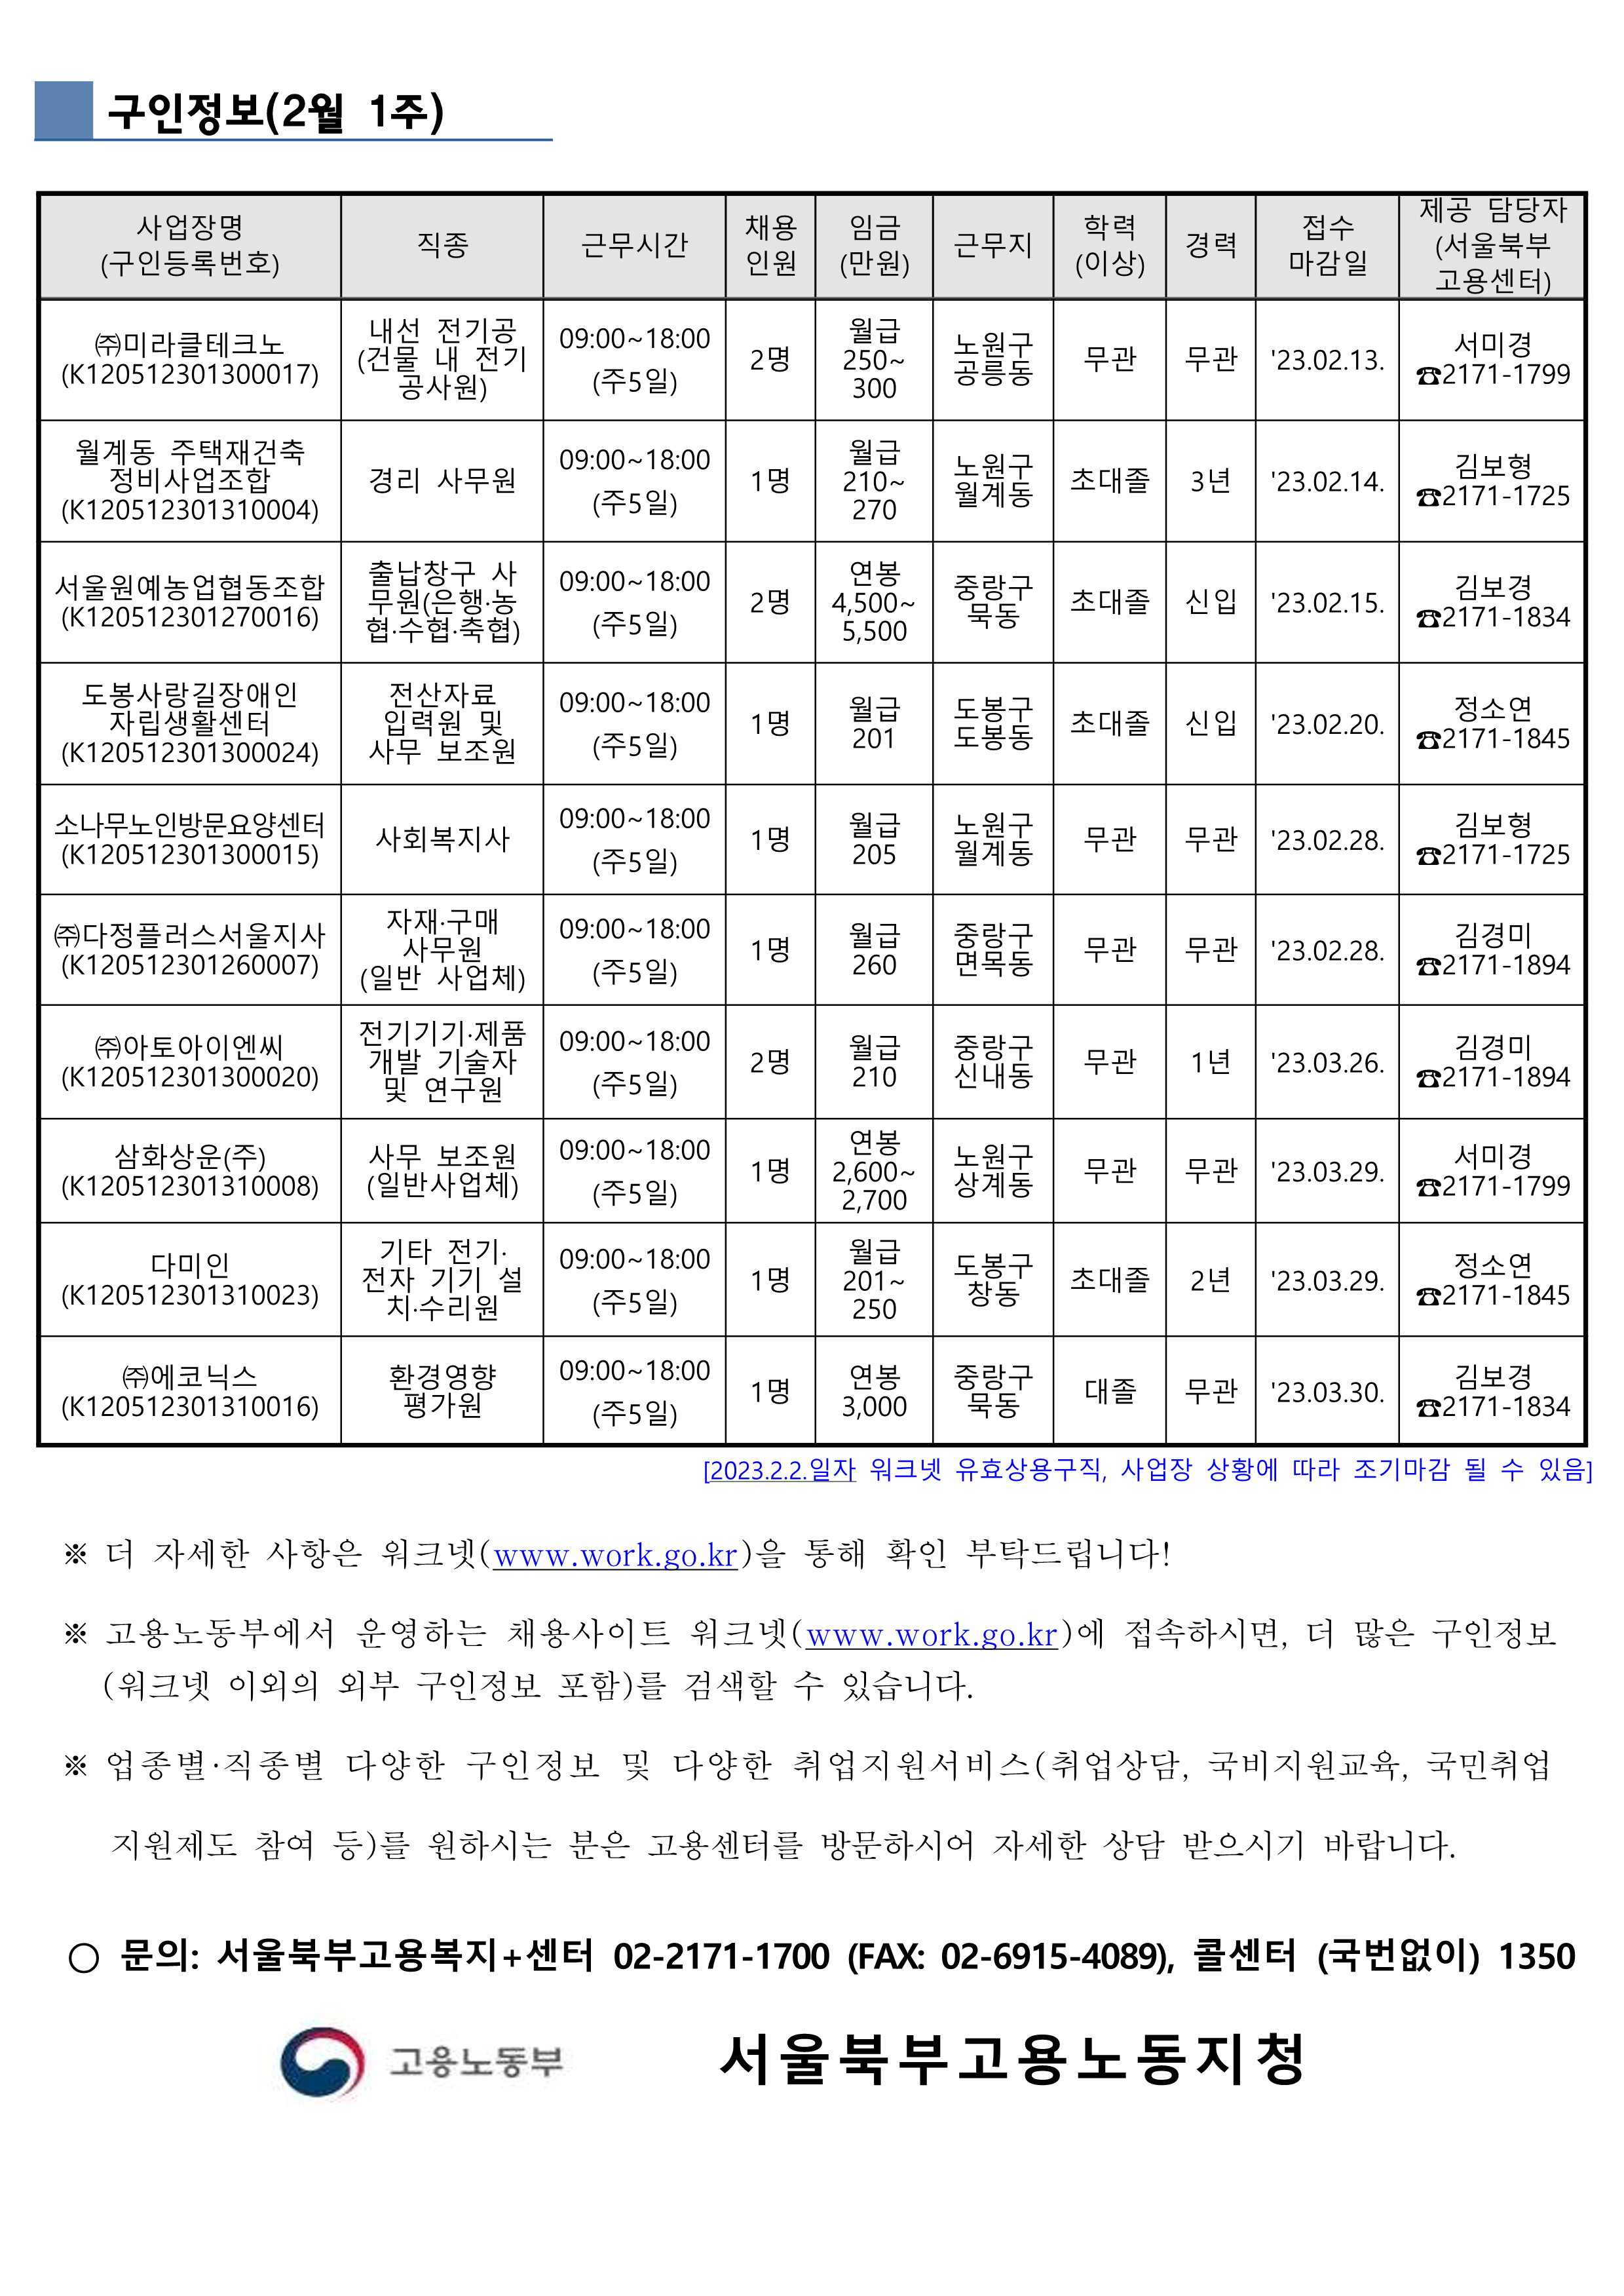 구인정보(서울북부고용복지센터-202322)pdf(link)_1